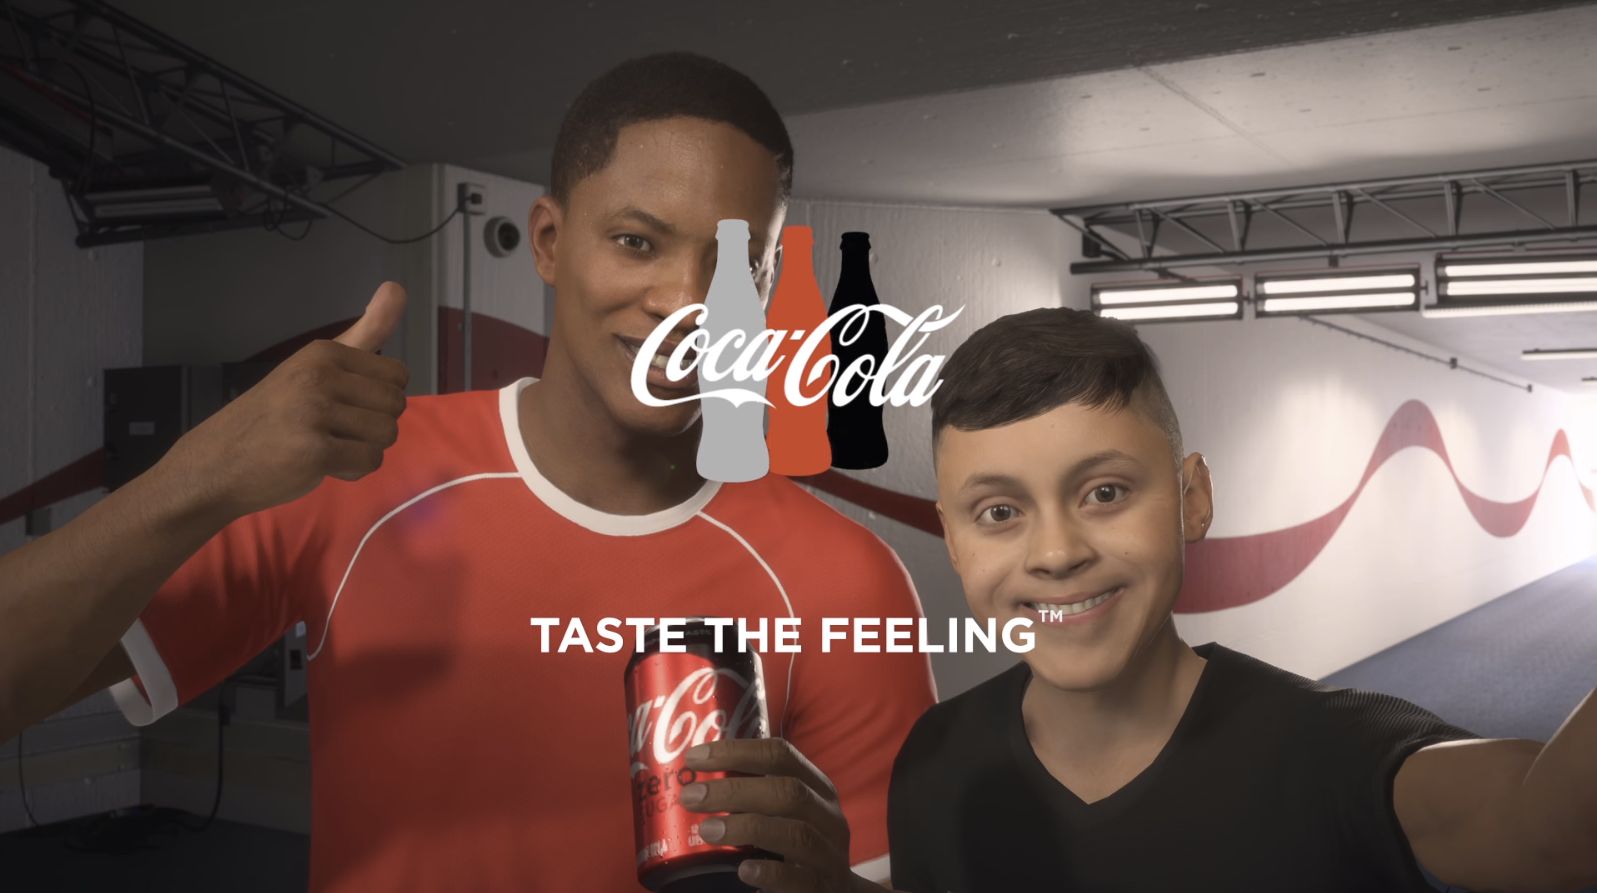 コカ コーラ 人気ゲーム Fifa 18 登場キャラクターのスポンサーに スポーツビジネス情報メディア スポーツ スポンサーシップ ジャーナル